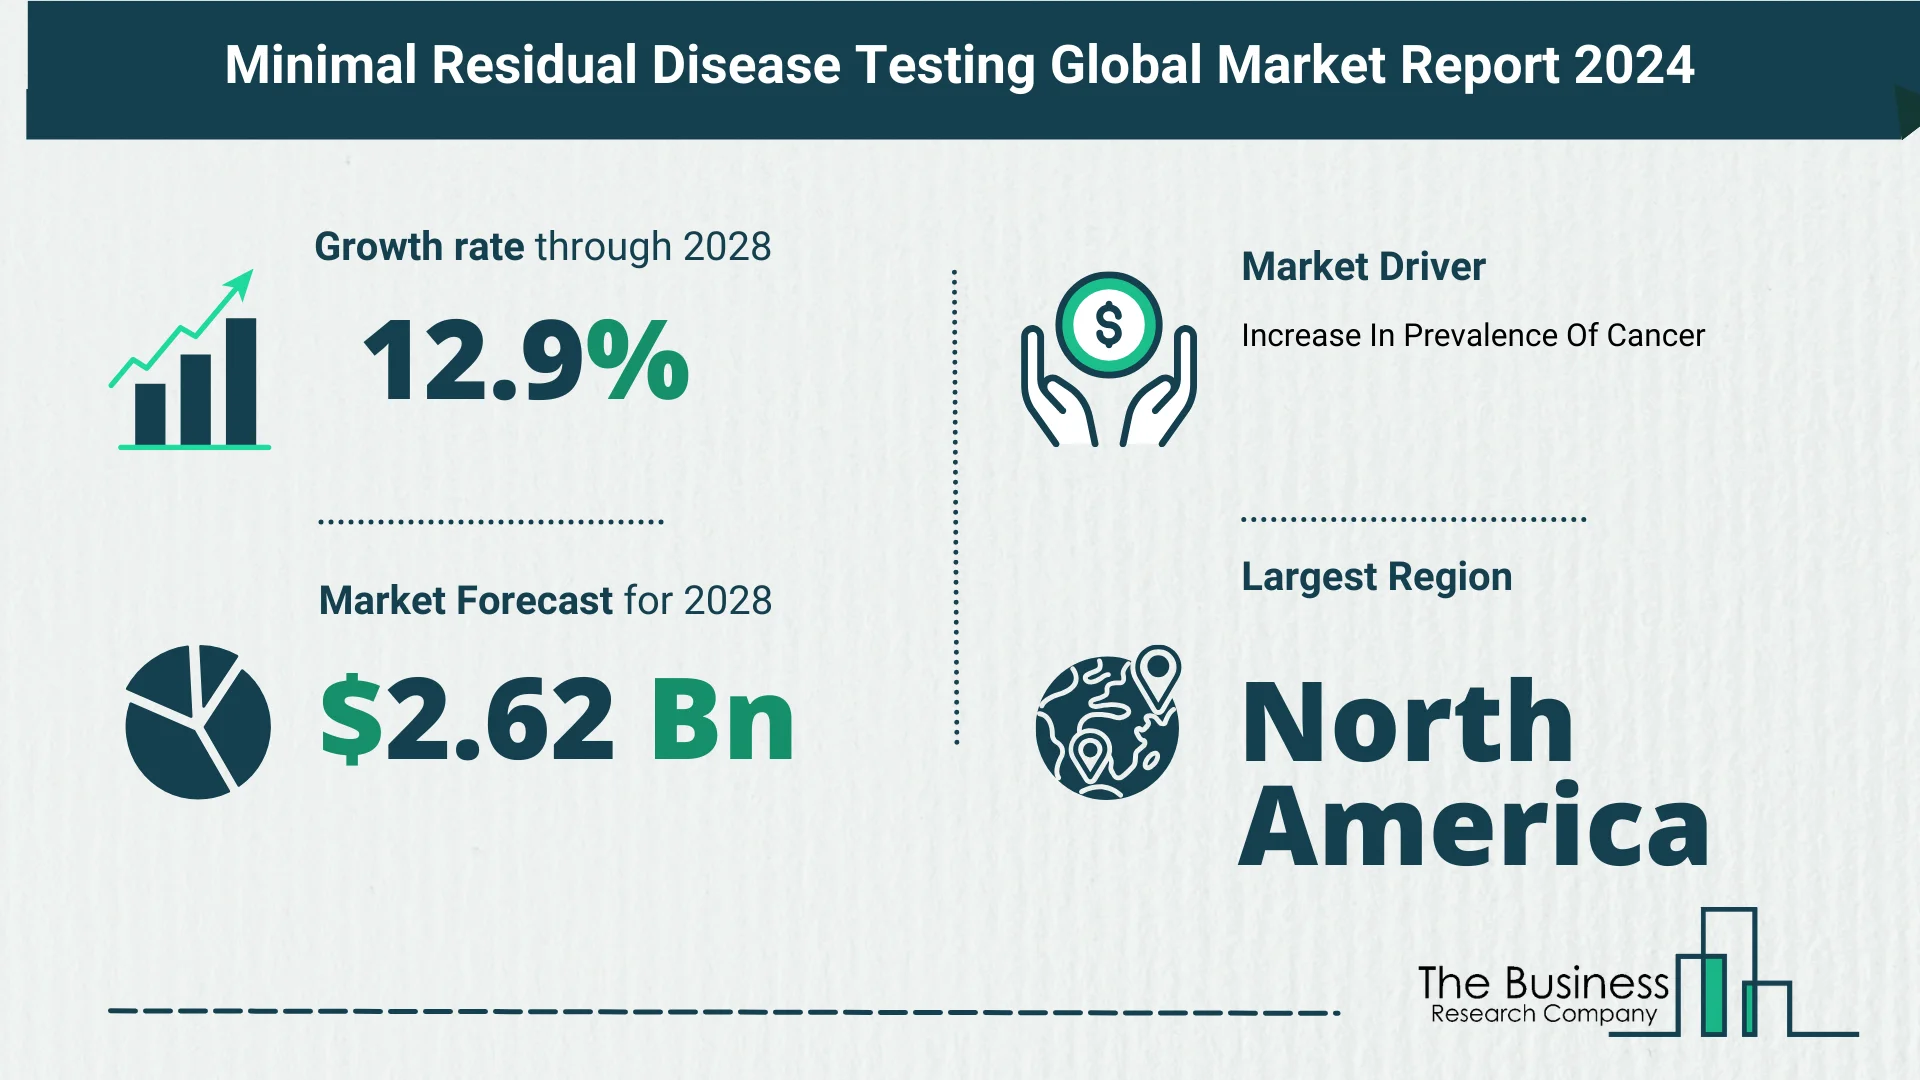 Global Minimal Residual Disease Testing Market Size